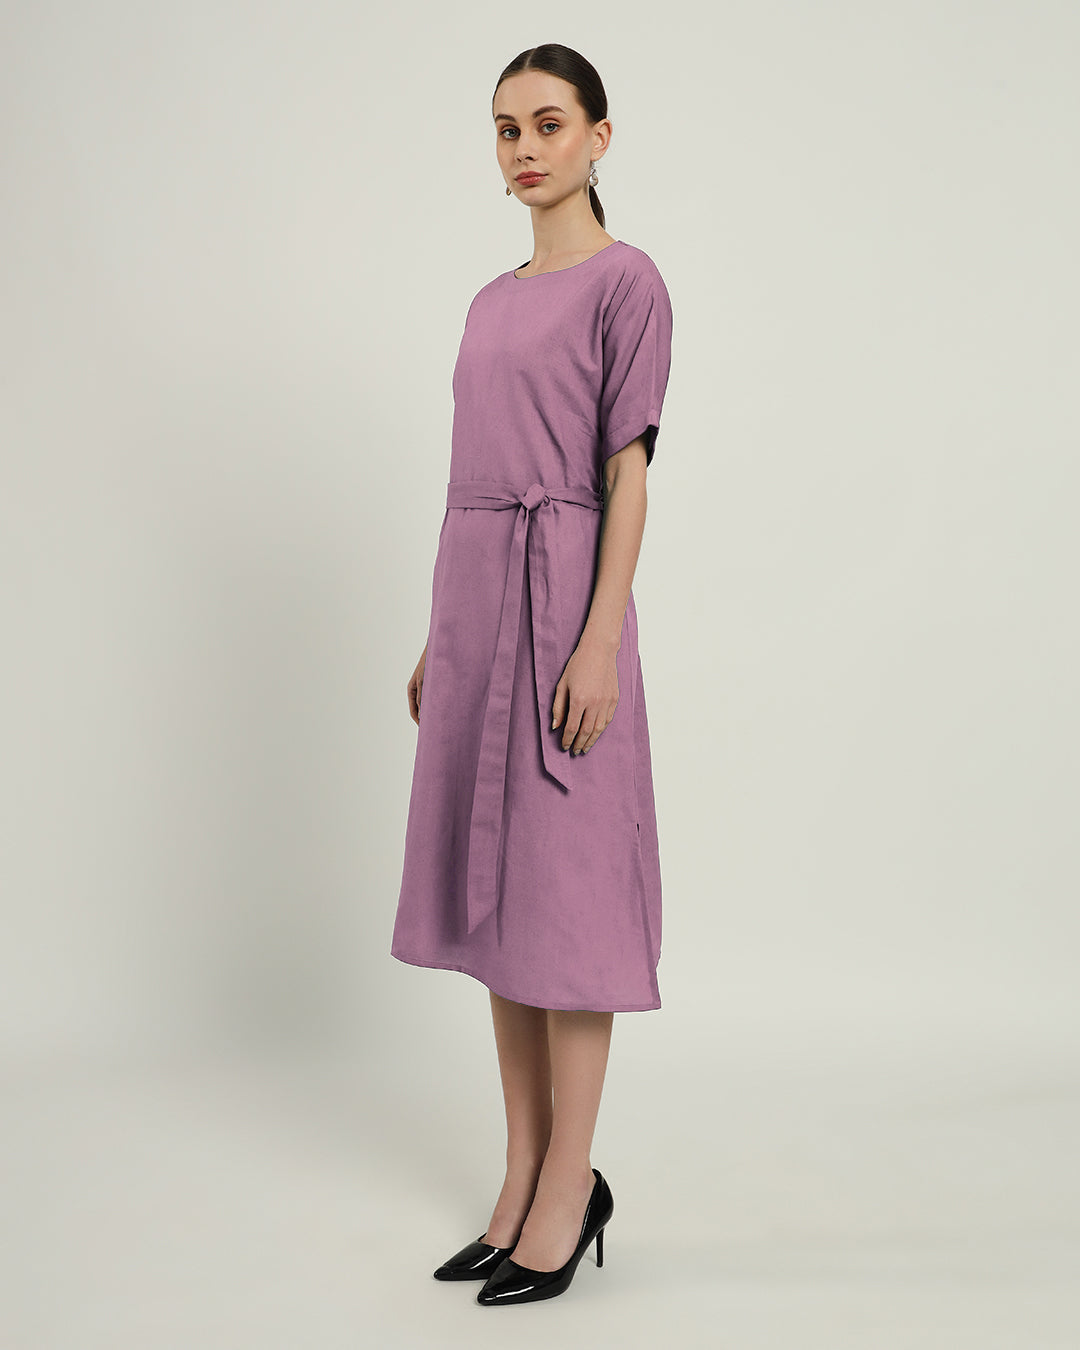 The Tayma Purple Swirl Dress